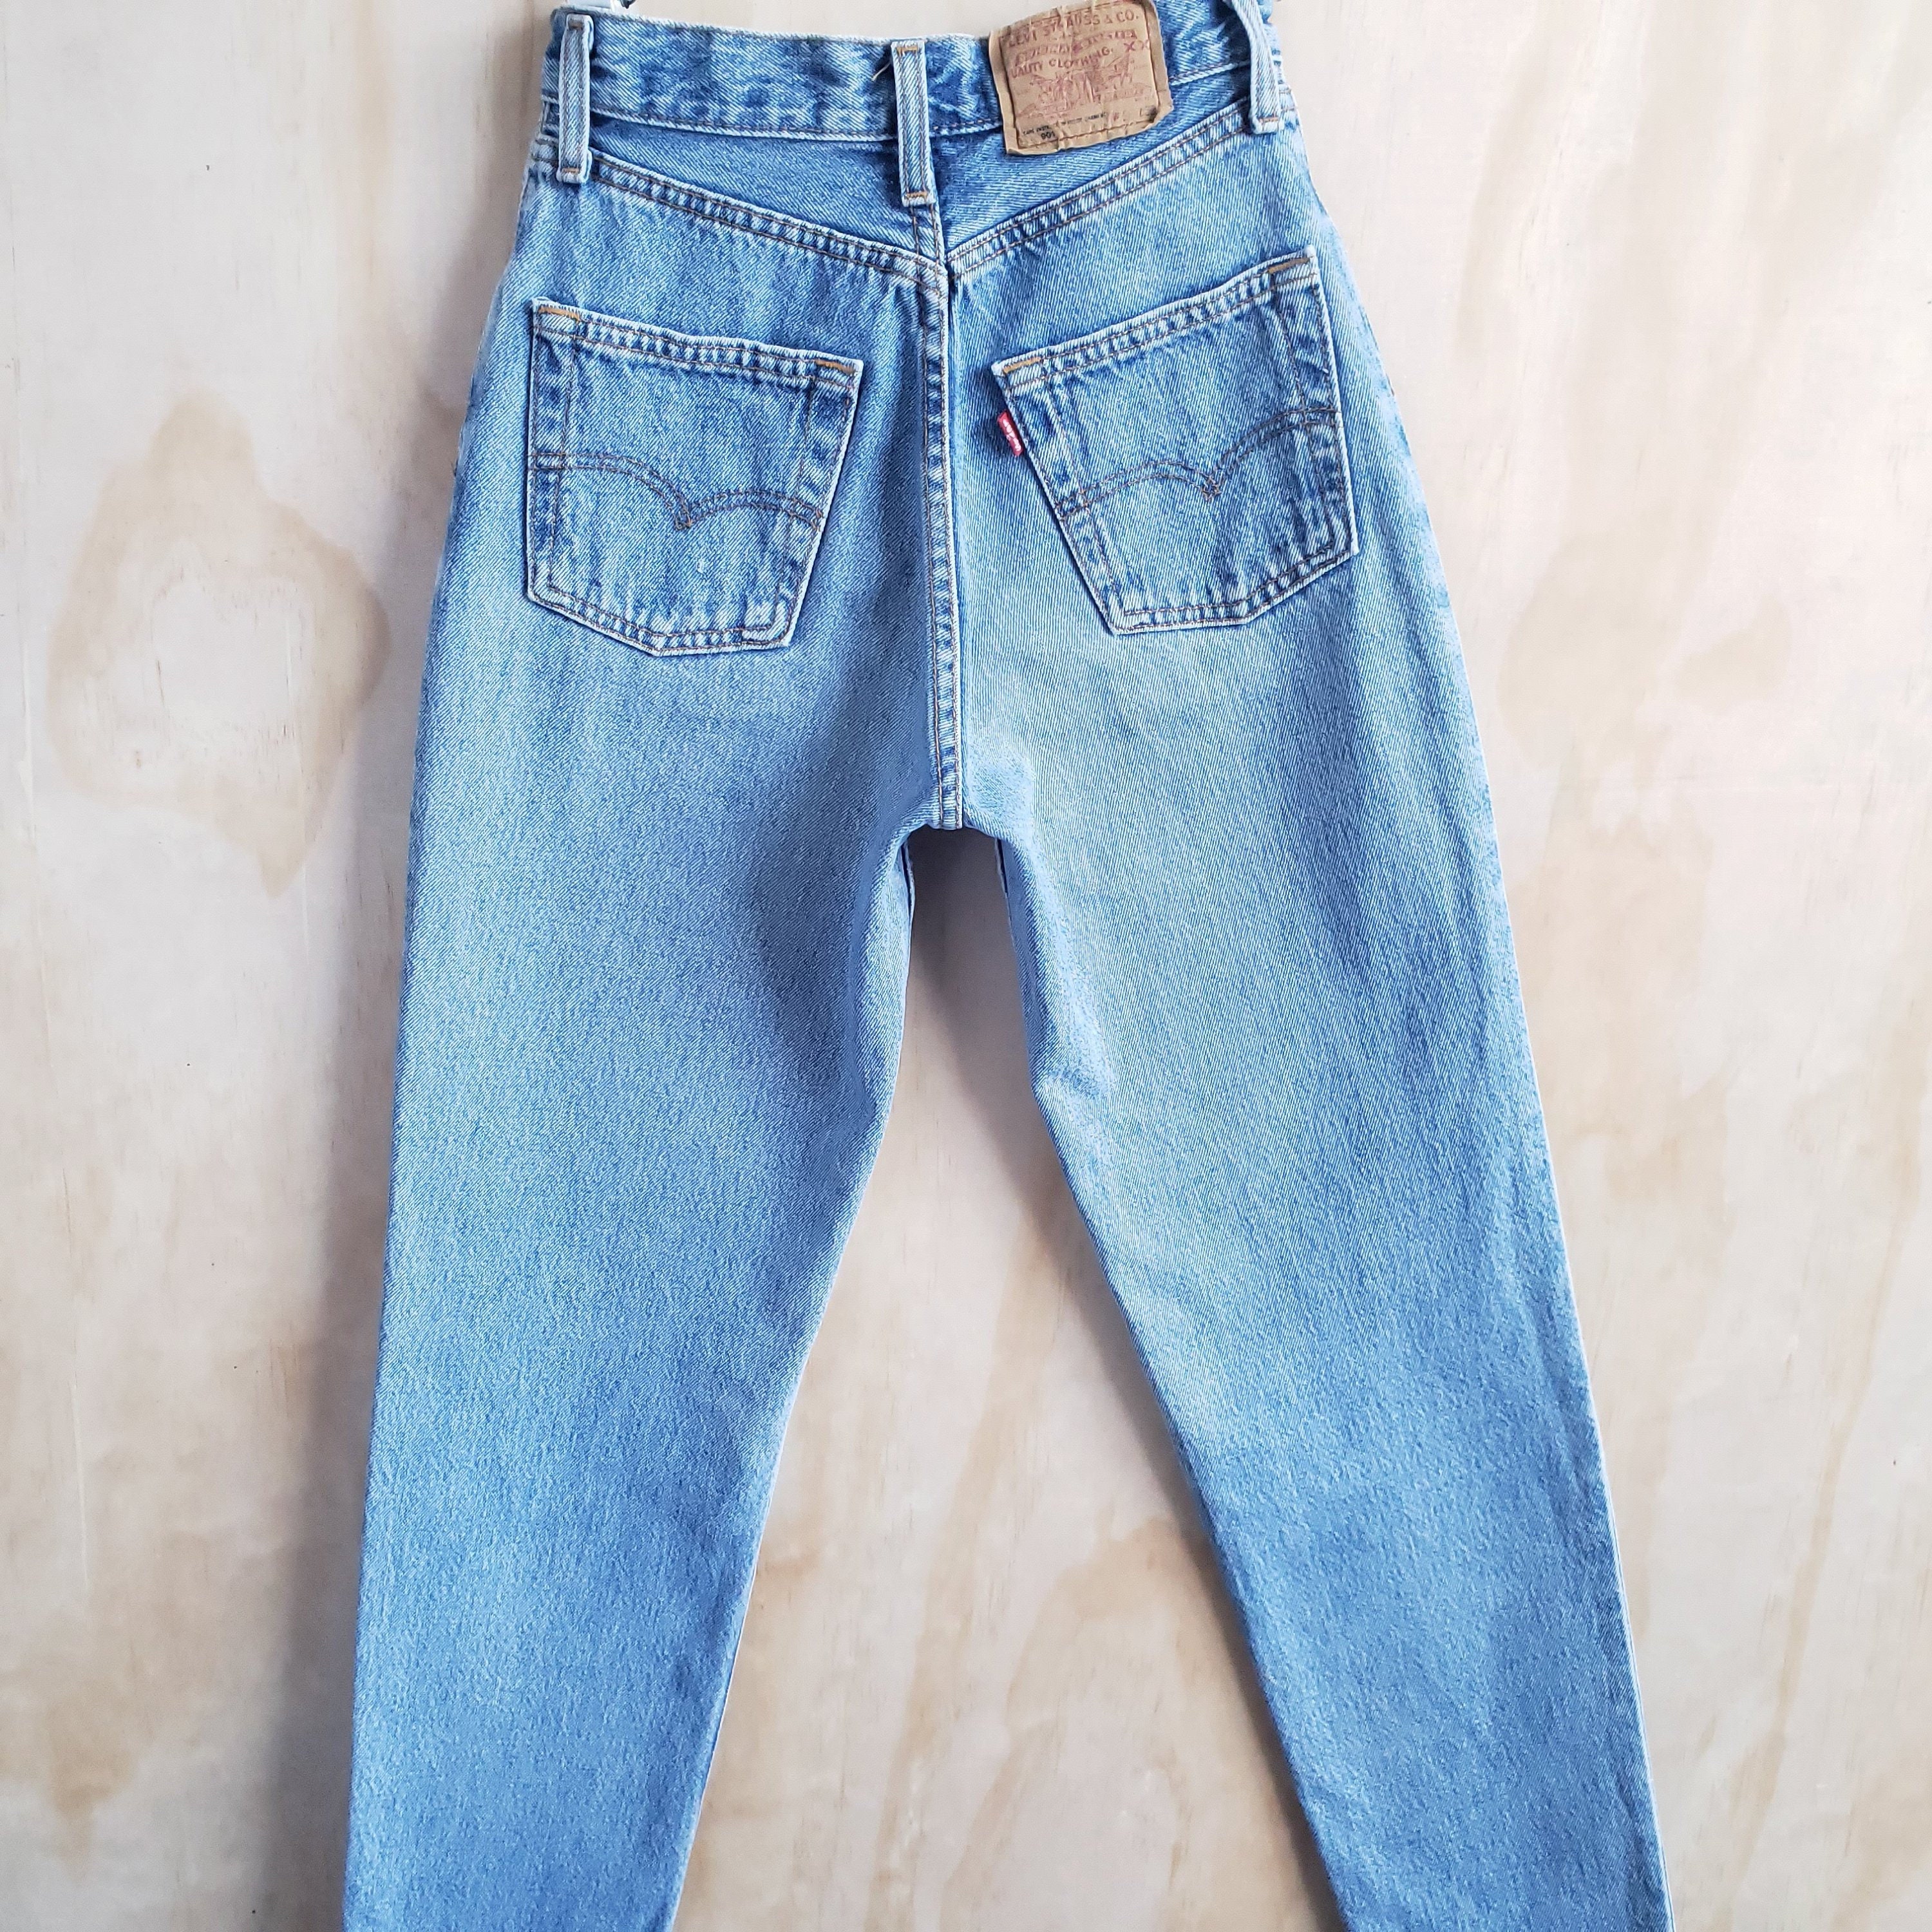 levis 901 jeans